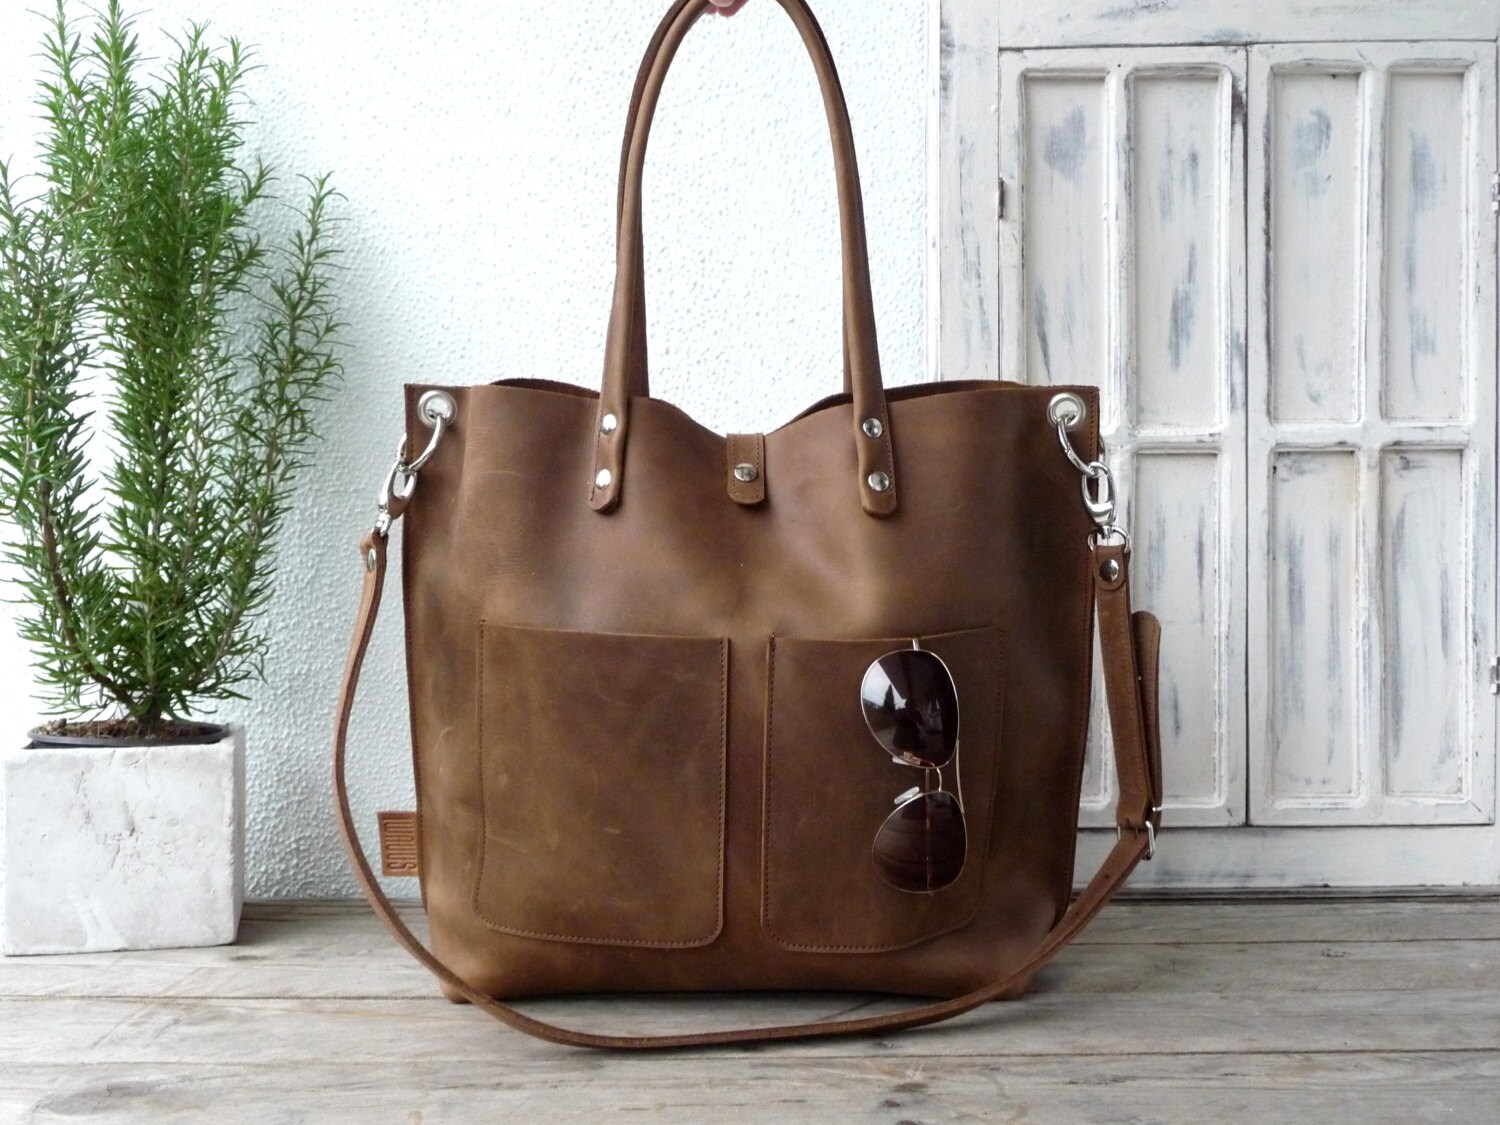 Large leather bag Leather bag Shoulder bag leather Leather | Etsy